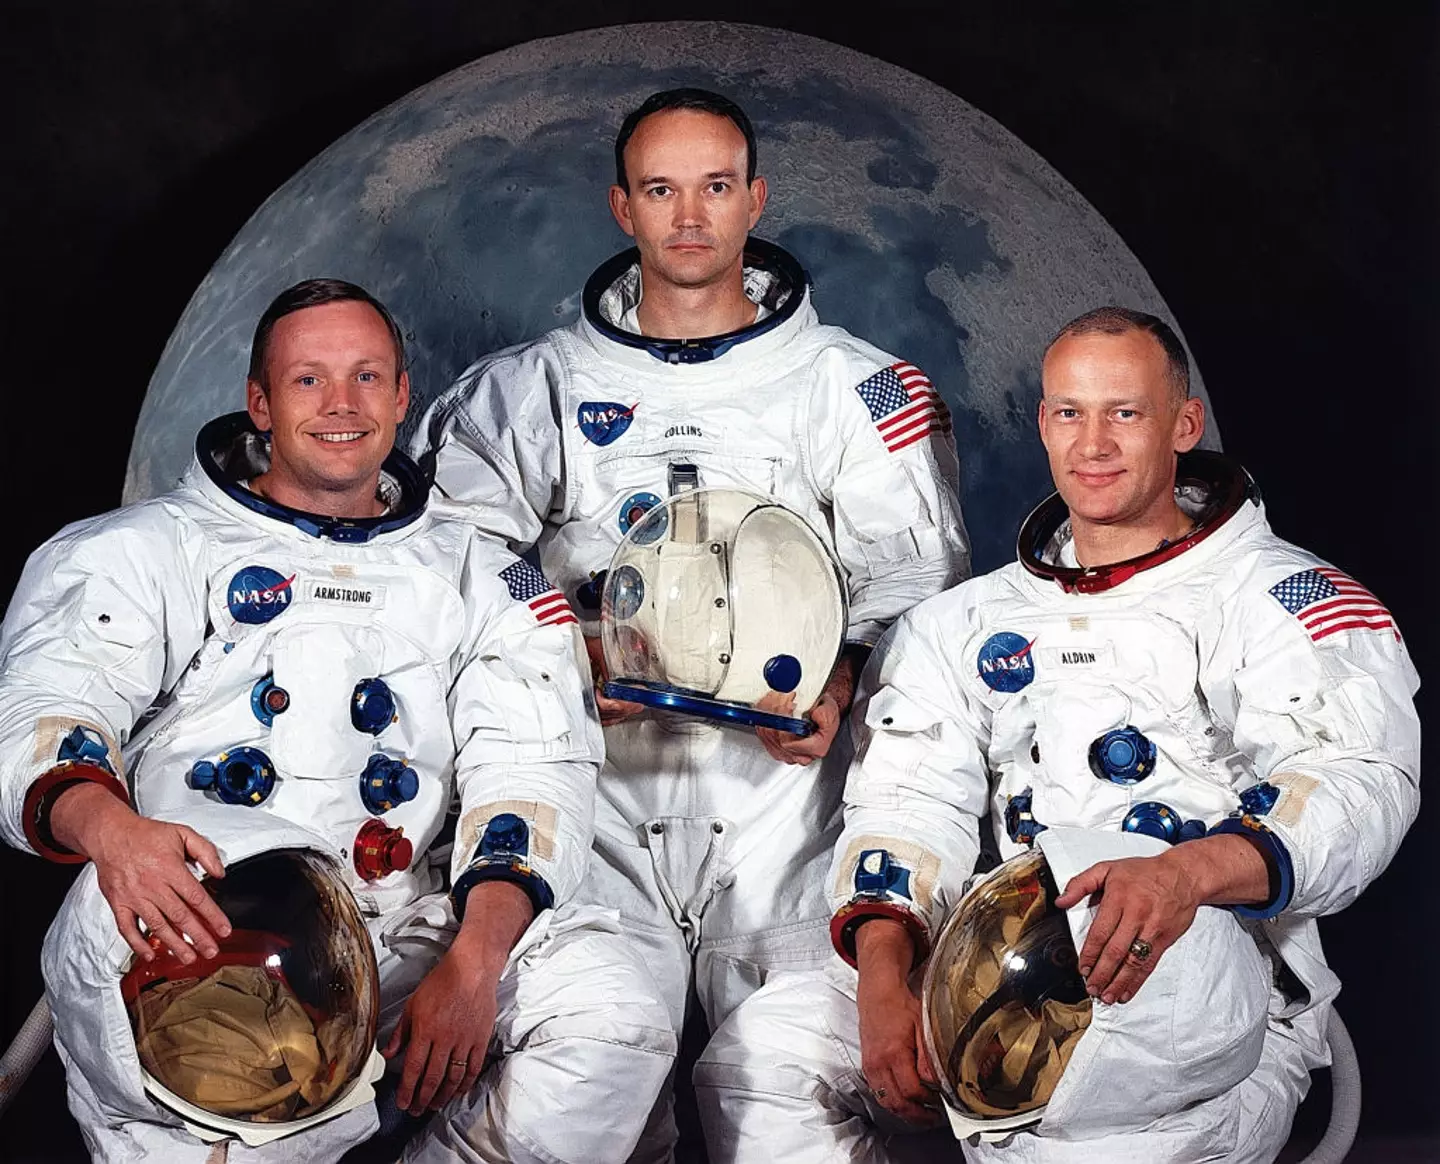 (Left to right) Neil A. Armstrong, commander; Michael Collins, command module pilot; and Edwin E. Aldrin Jr., lunar module pilot.